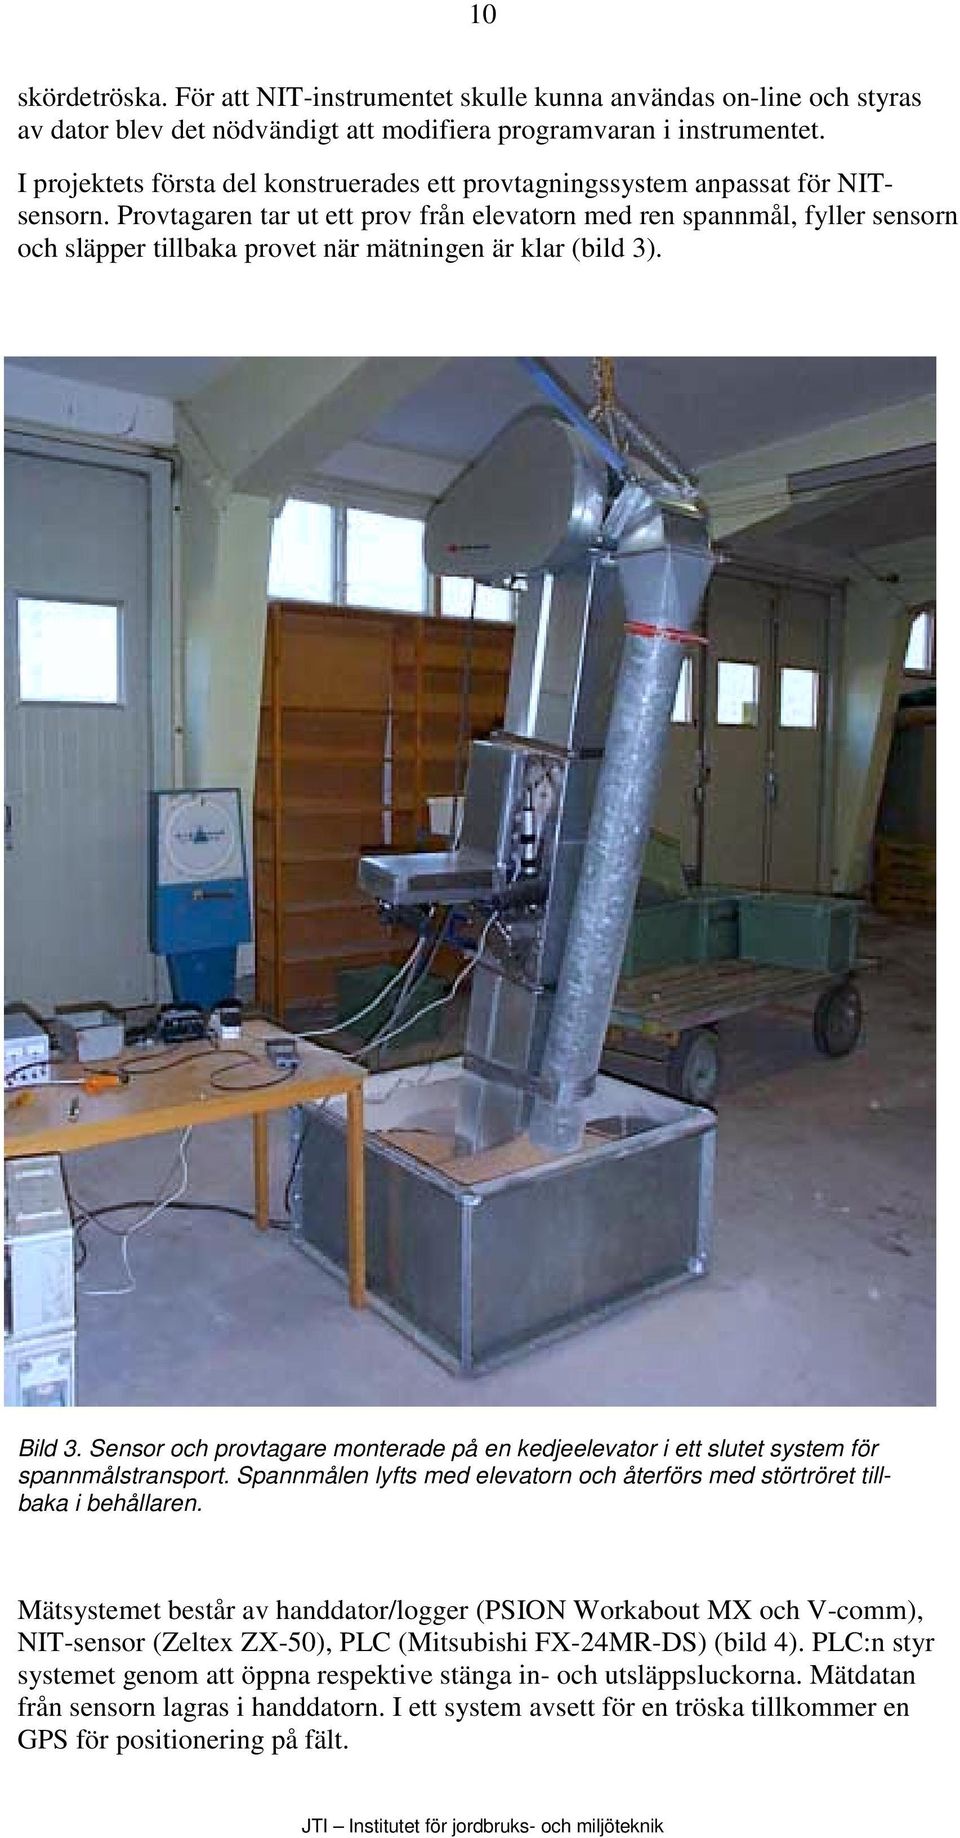 Provtagaren tar ut ett prov från elevatorn med ren spannmål, fyller sensorn och släpper tillbaka provet när mätningen är klar (bild 3). Bild 3.